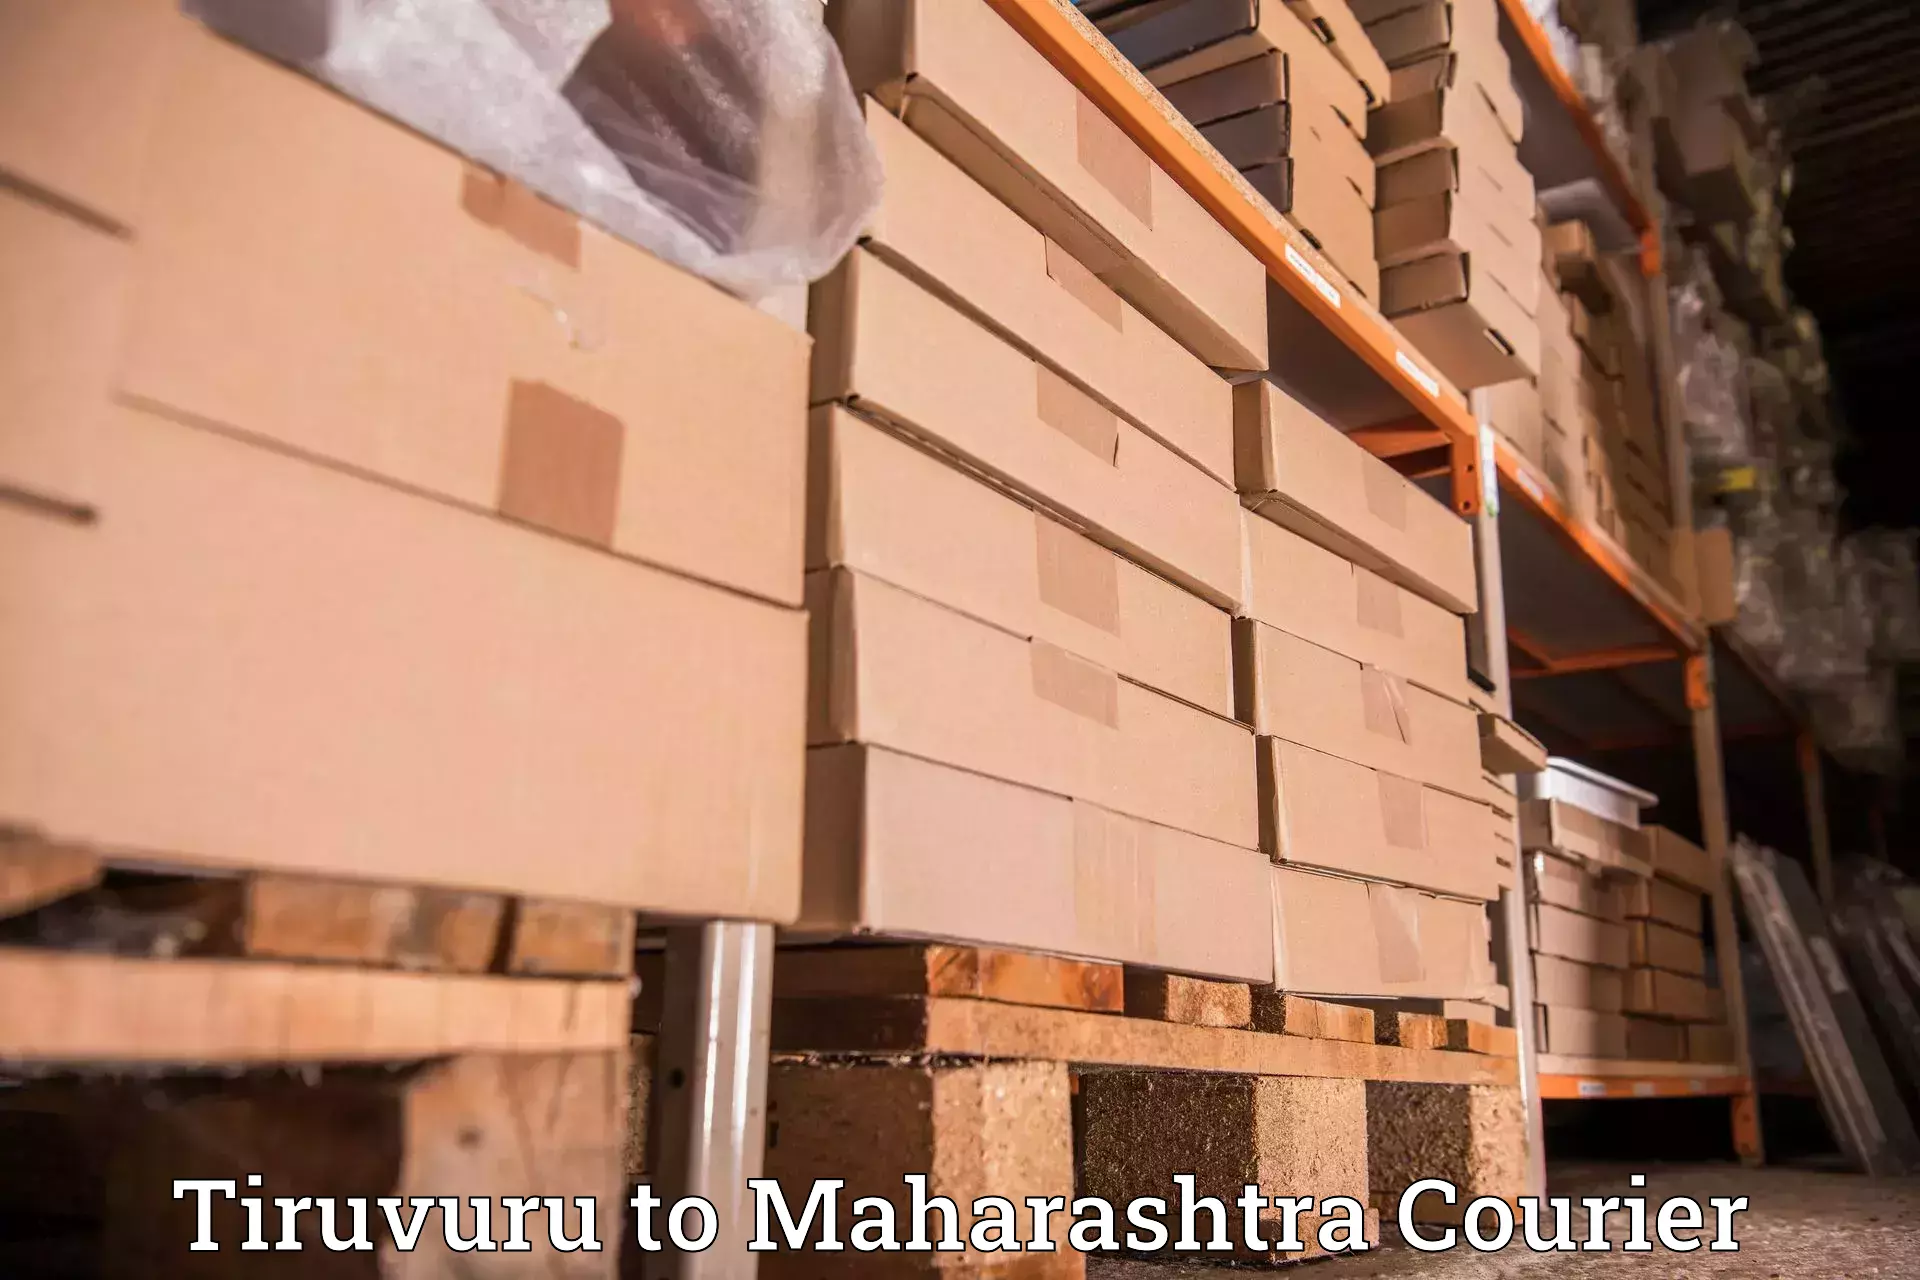 Courier service comparison Tiruvuru to Ojhar